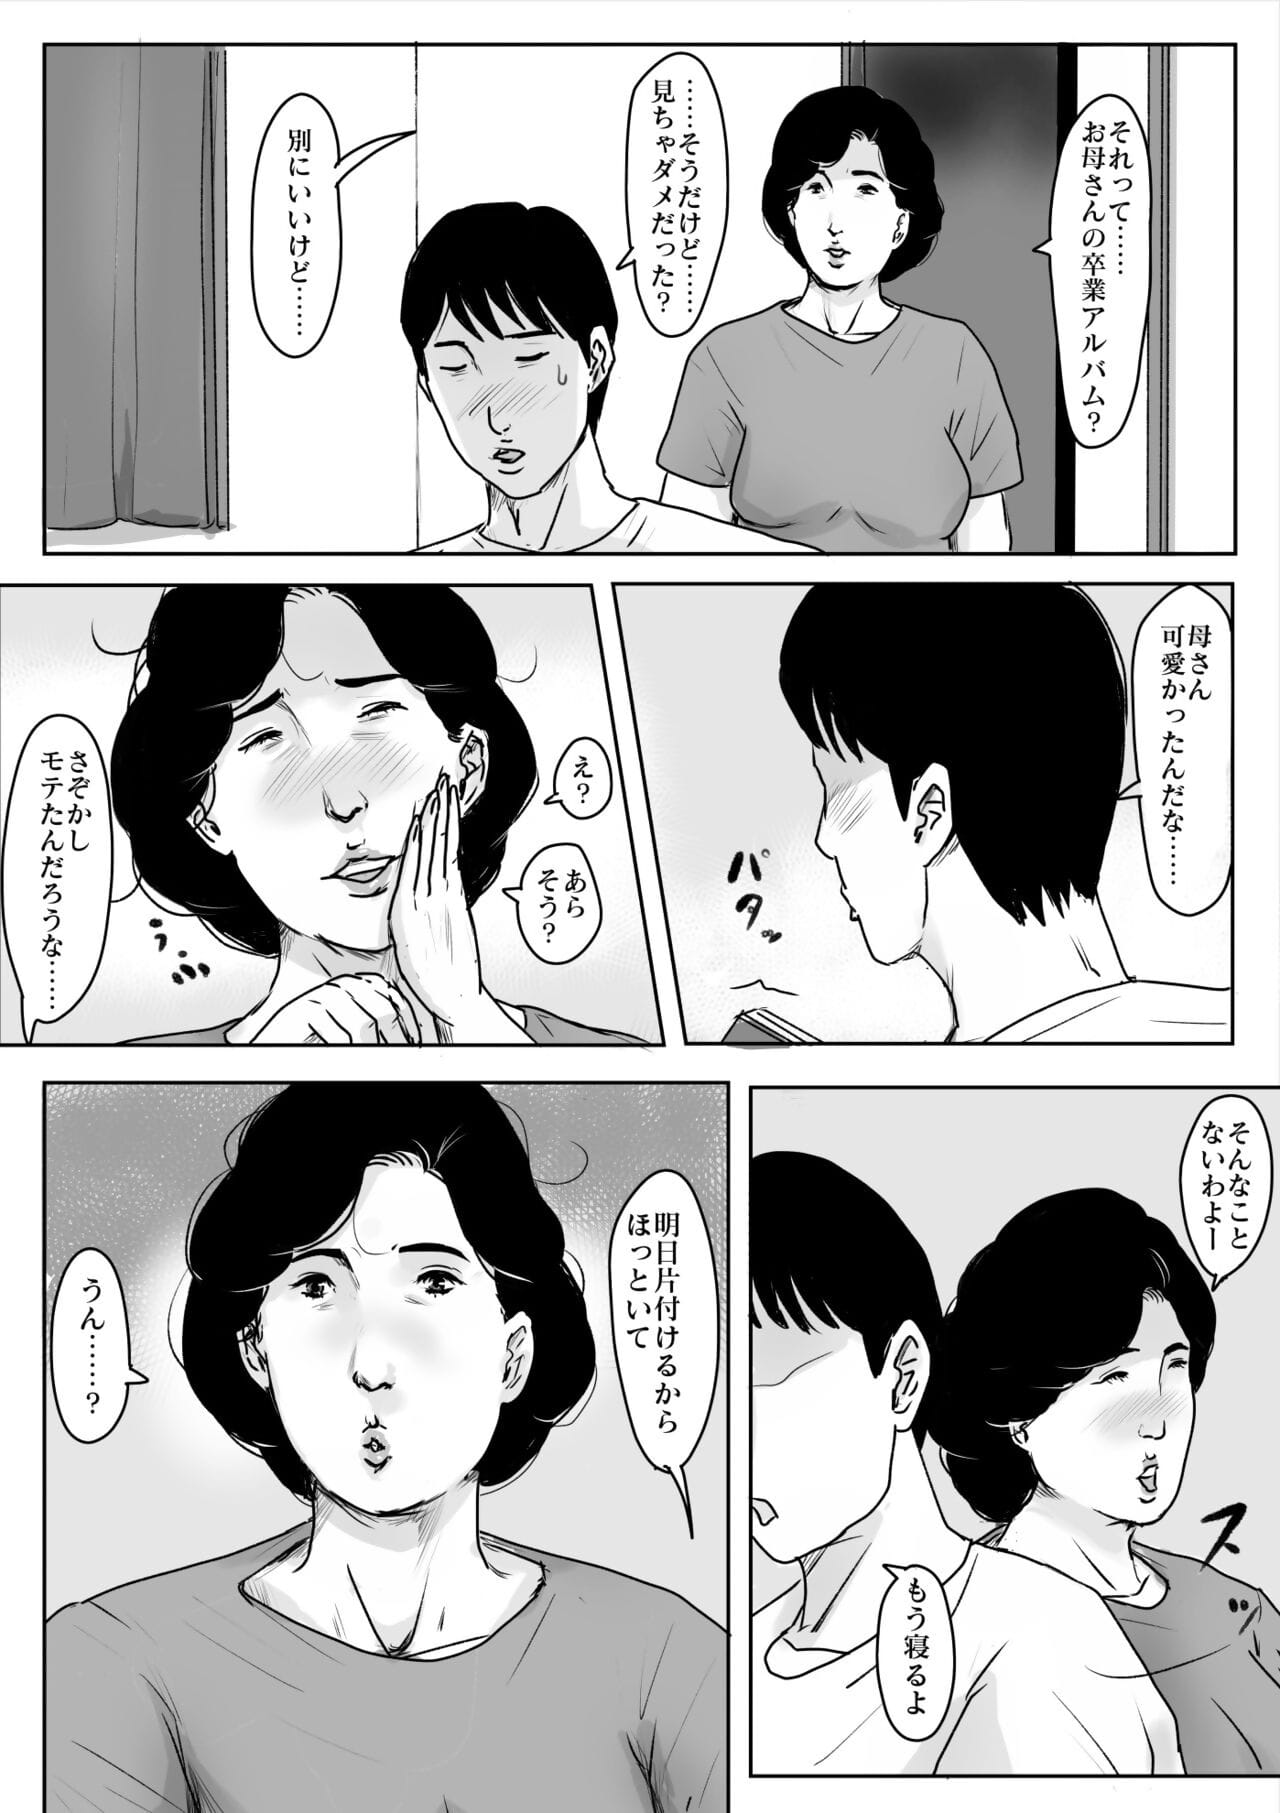 hahah n koishite #3 омоидэ nie Natsu page 1